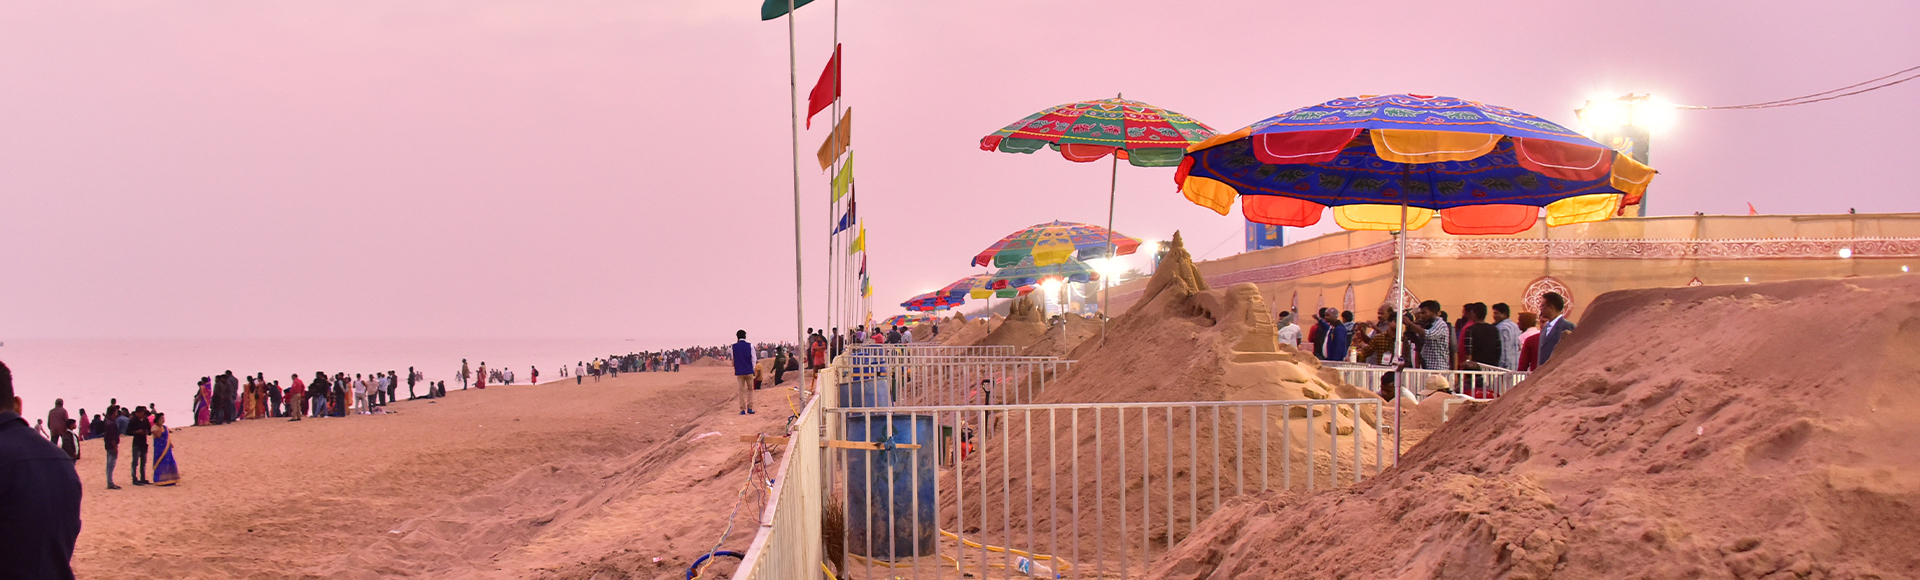 International Sand Art Festival